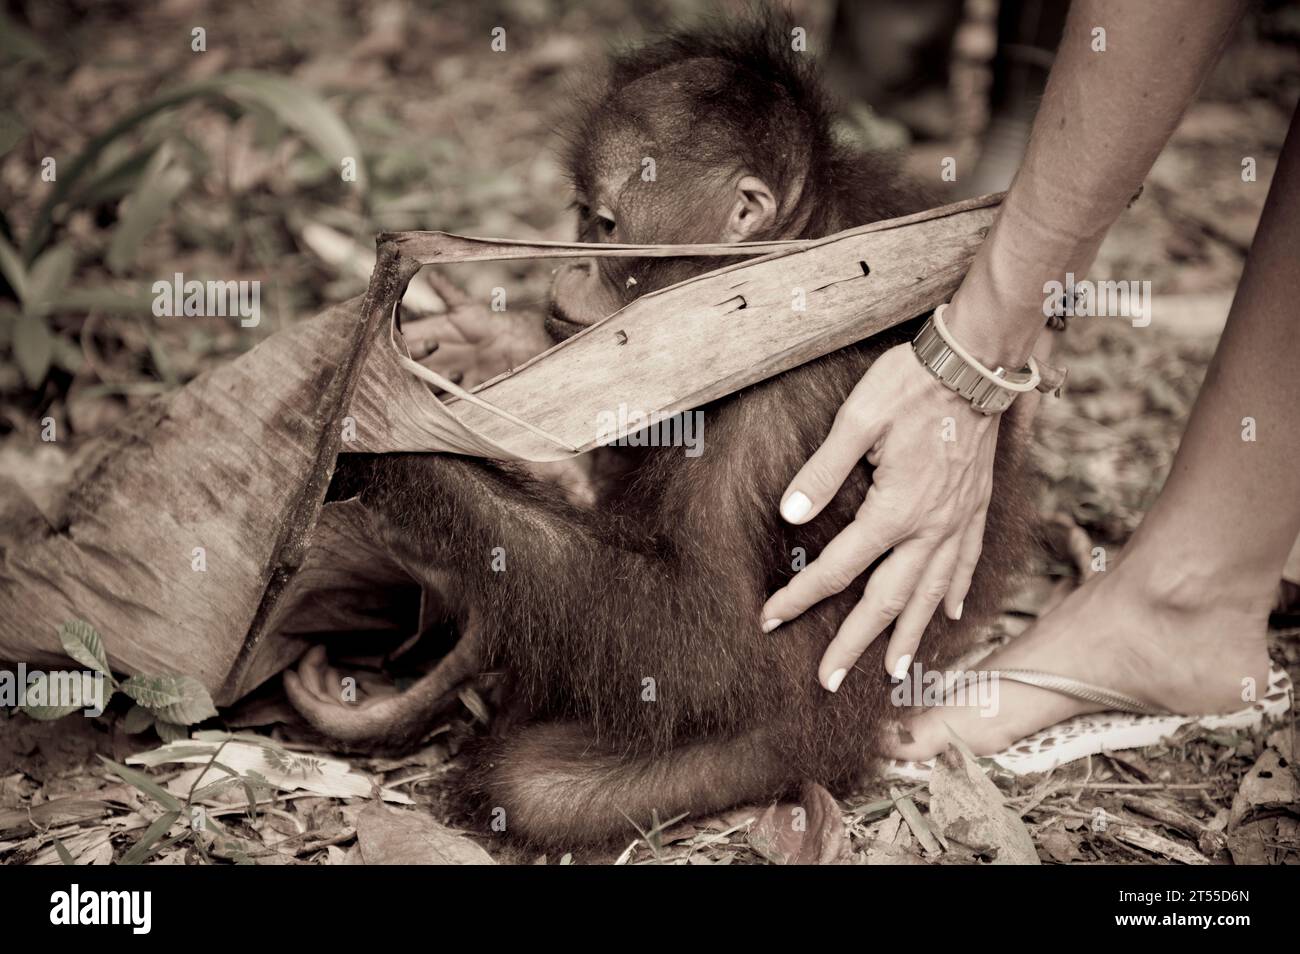 Photos de primates sauvages et captifs prises à Bornéo et Langkawi en Malaisie Banque D'Images